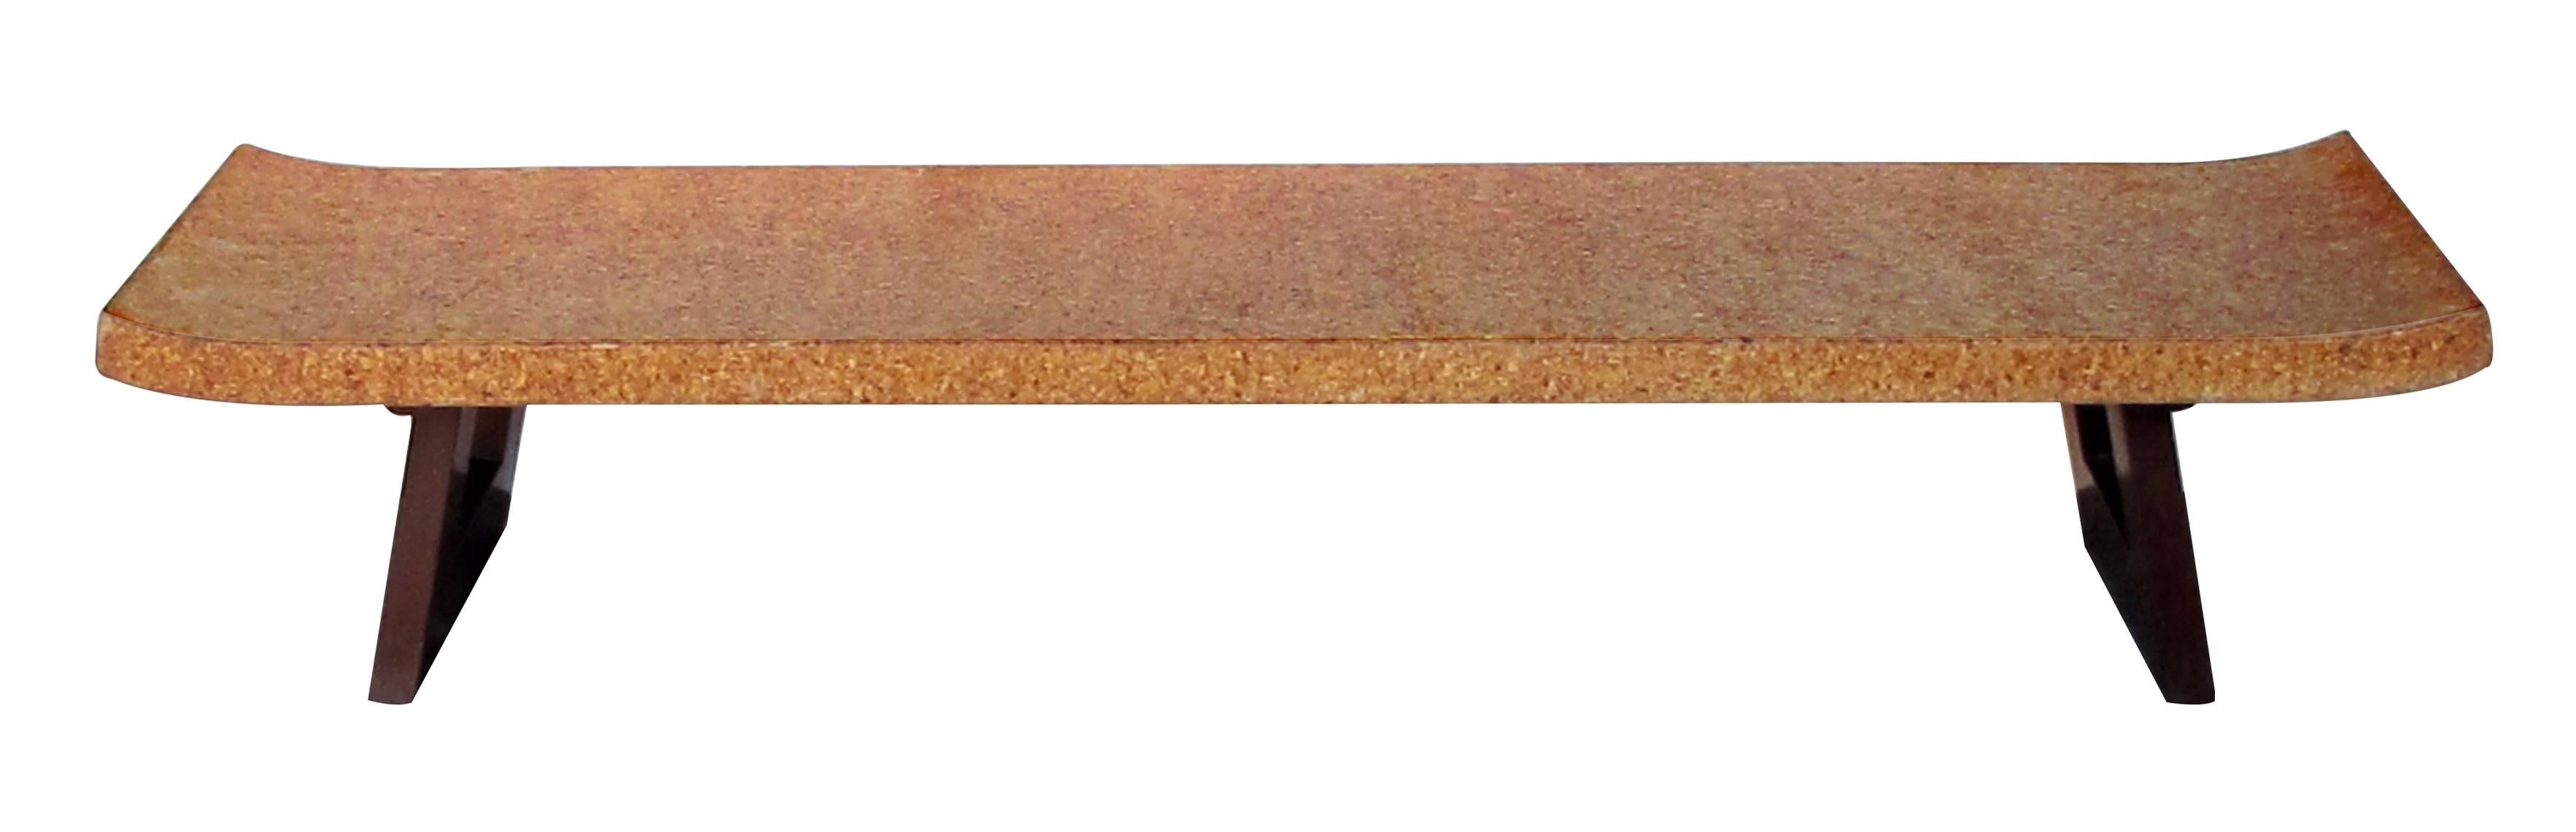 Banc ou table basse en liège d'inspiration asiatique du milieu du siècle, Paul Frankl for Johnson Furniture, avec des supports en bois ouverts ; l'élégant et long plateau rectangulaire en liège aux extrémités évasées repose sur des supports en bois